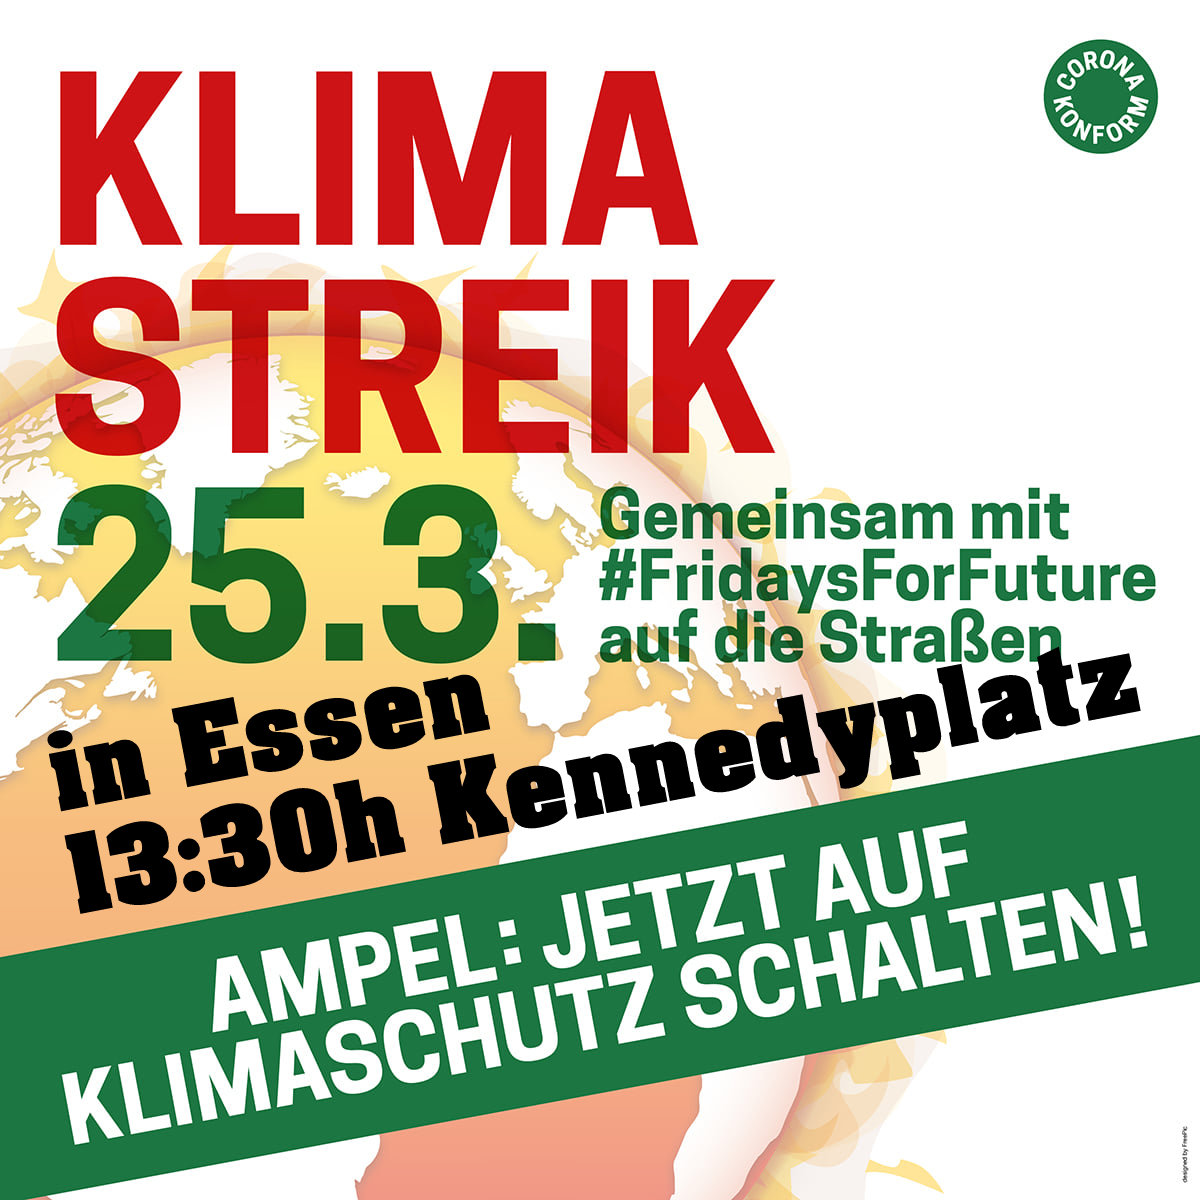 KLIMA-STREIK in Essen am Freitag 25.3.2022 um 13:30h Kennedyplatz